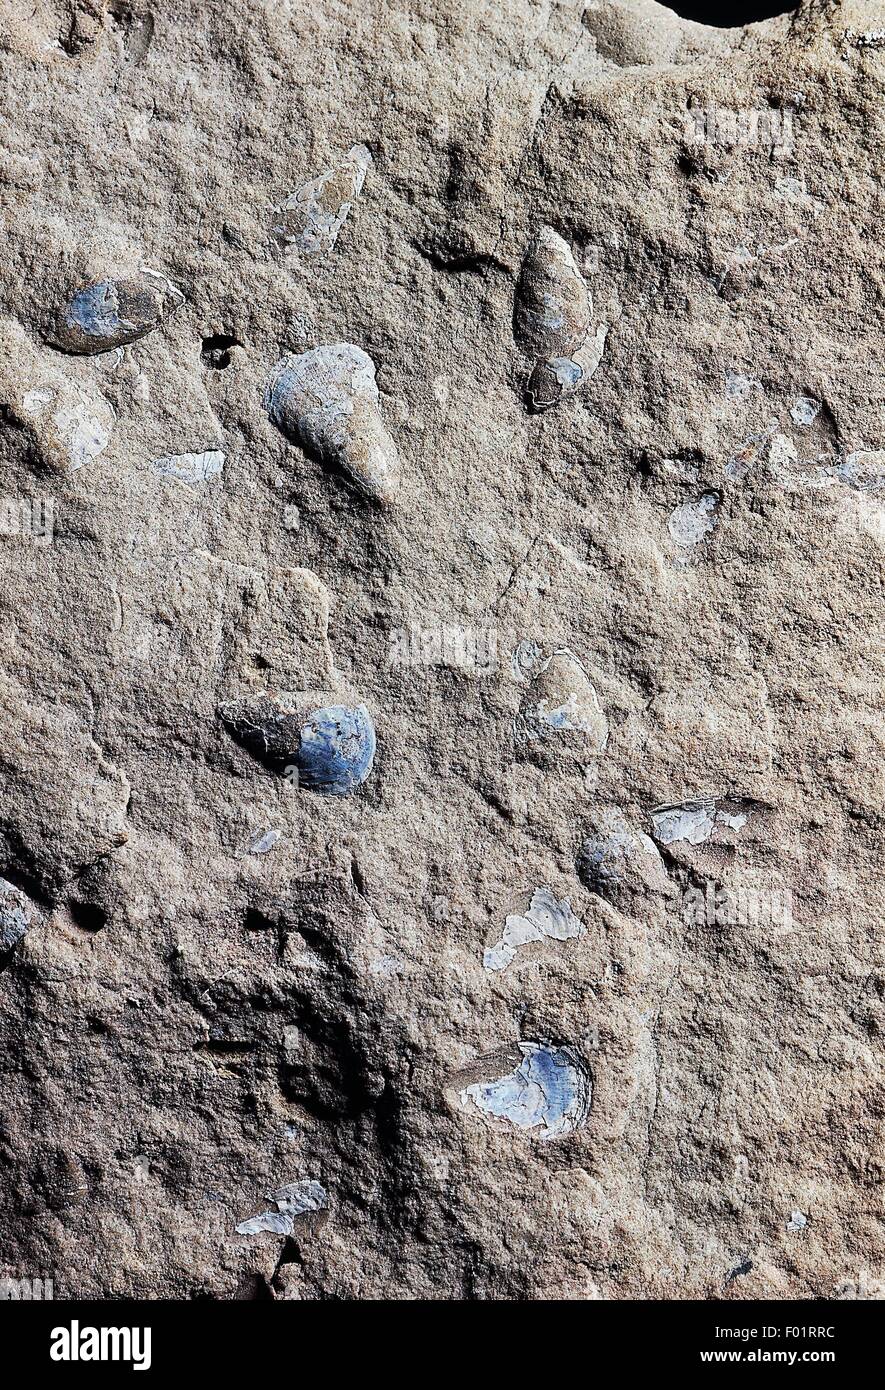 Lingula cuneata fósiles, Brachiopoda, Época Silúrico temprano. Foto de stock